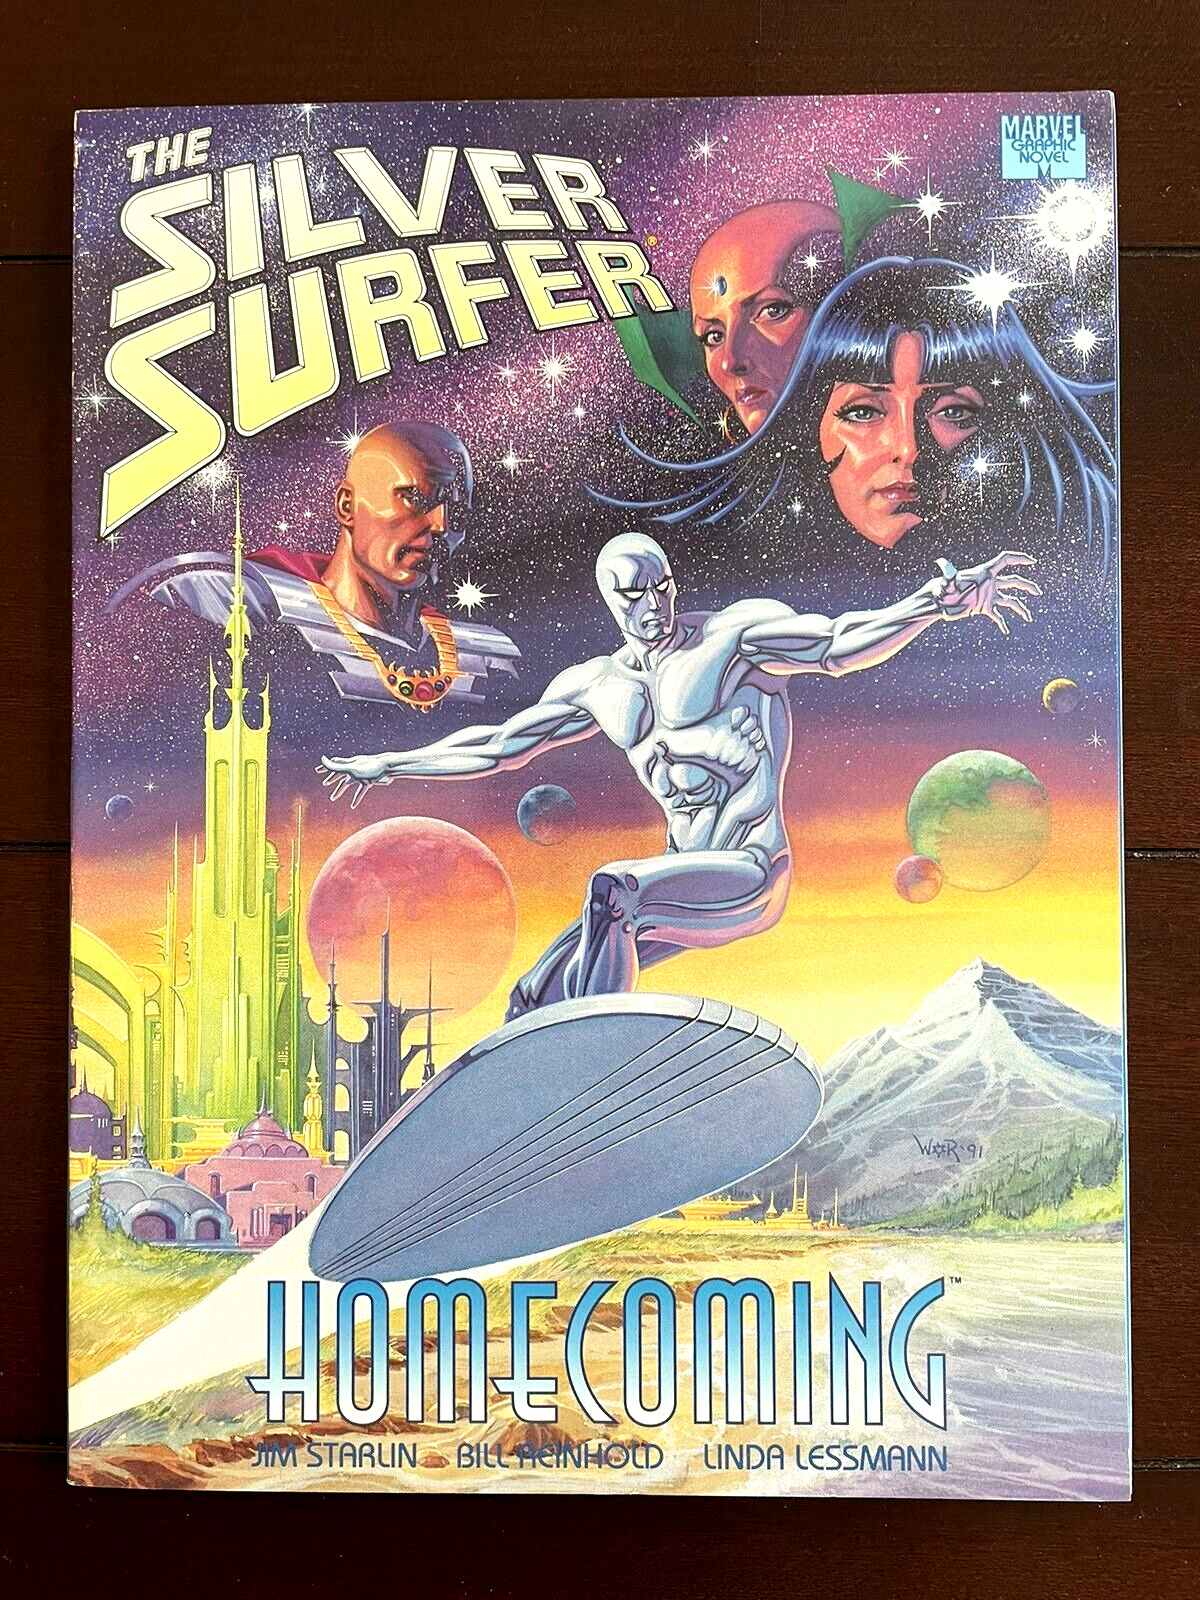 SILVER SURFER: Homecoming by Jim Starlin (Marvel Comics November 1991)